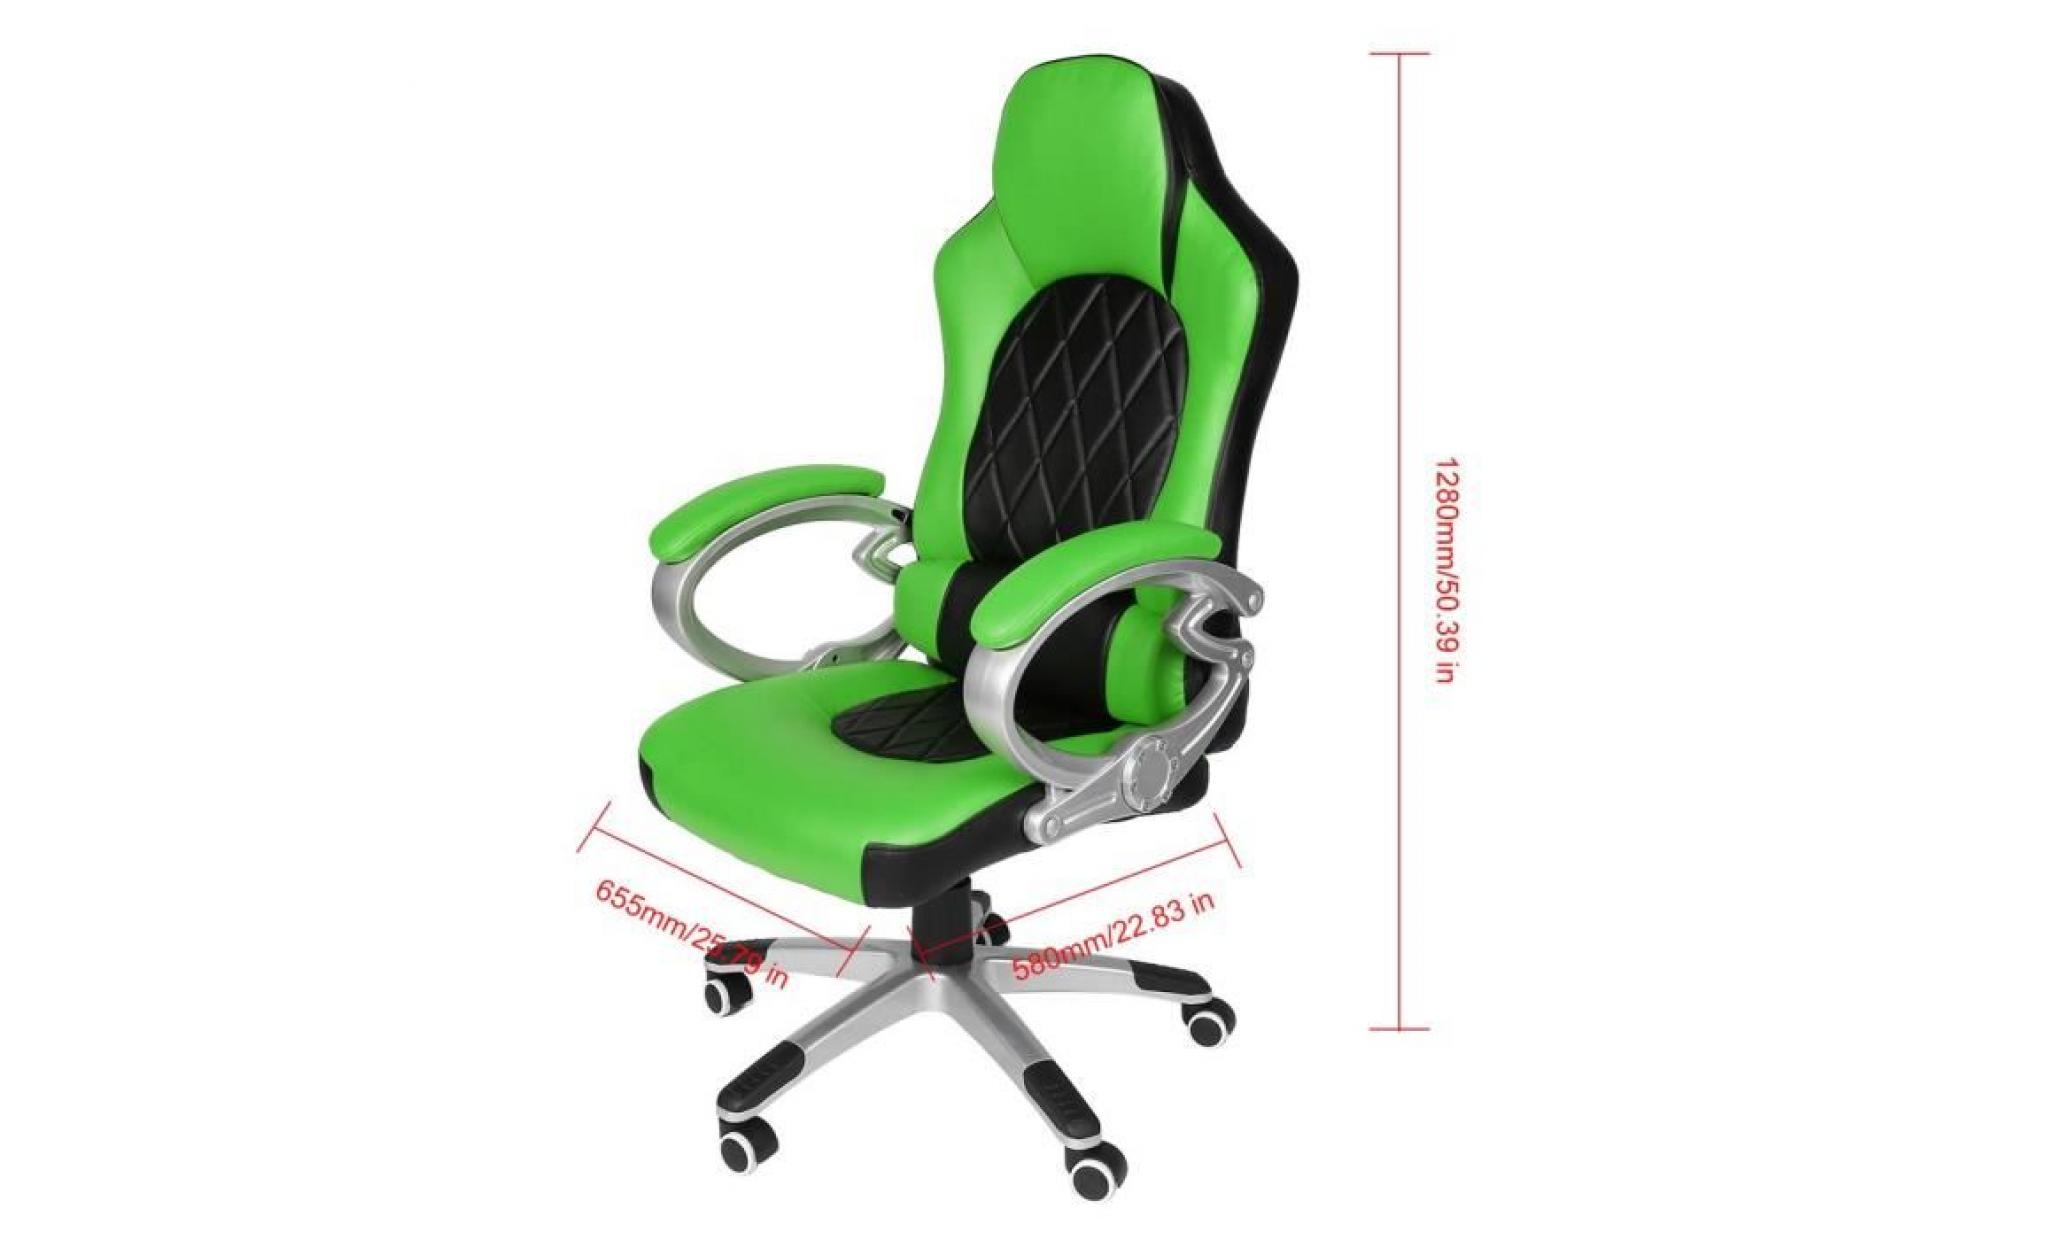 leshp® fauateuil gaming fauteuil de jeu vidéo chaise de bureau de maison vert noir pas cher